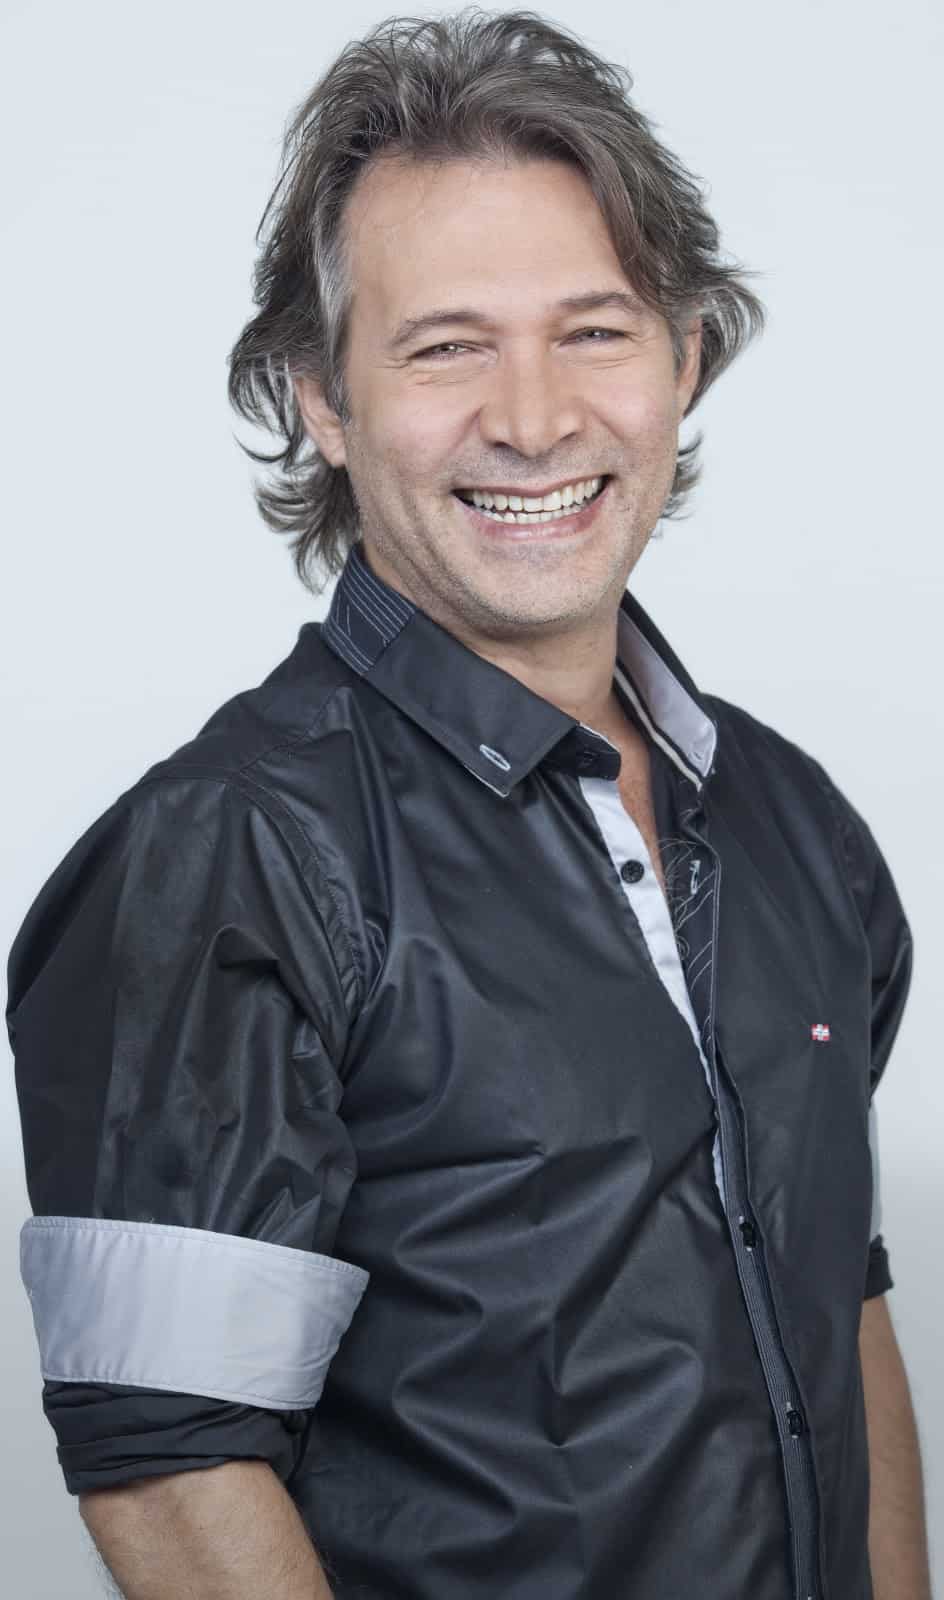 Nelson Freitas, um dos atores escalados para a nova "Malhação"